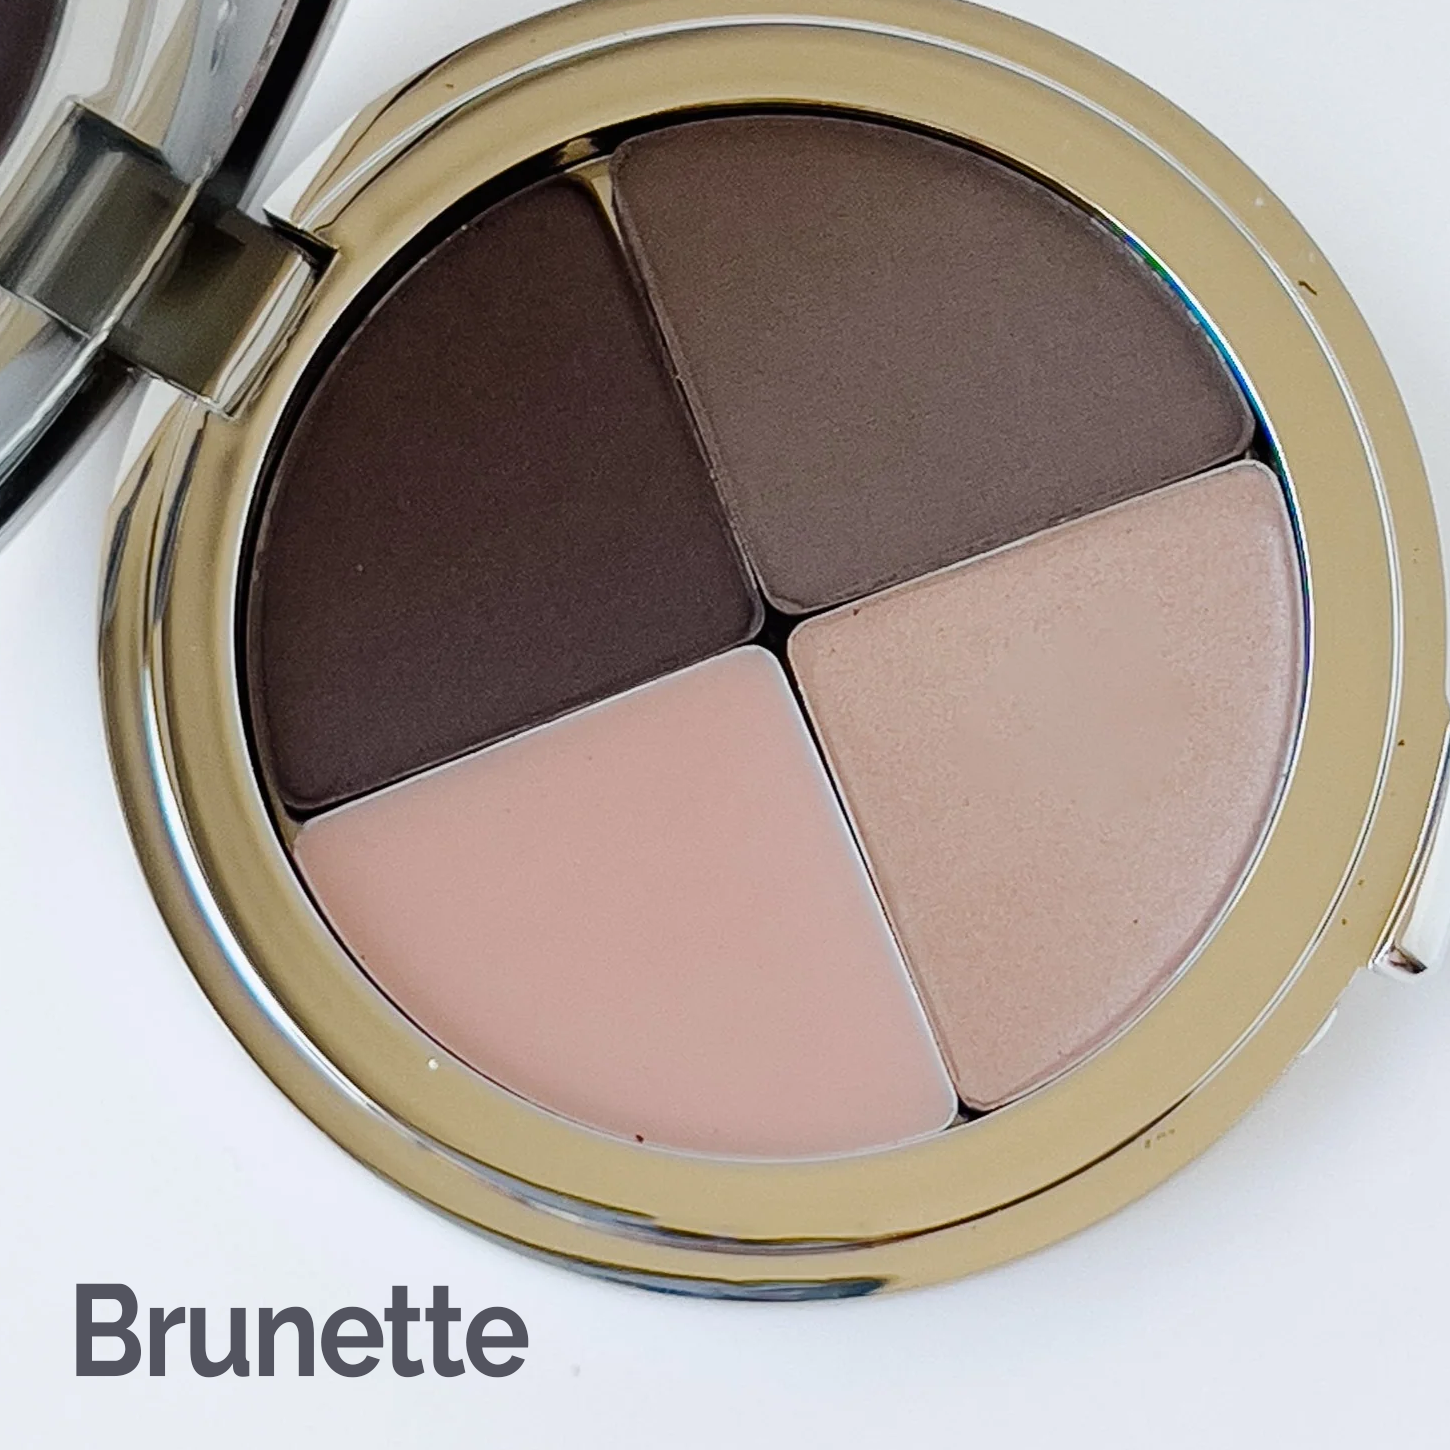 Brunette color swatch #brunette